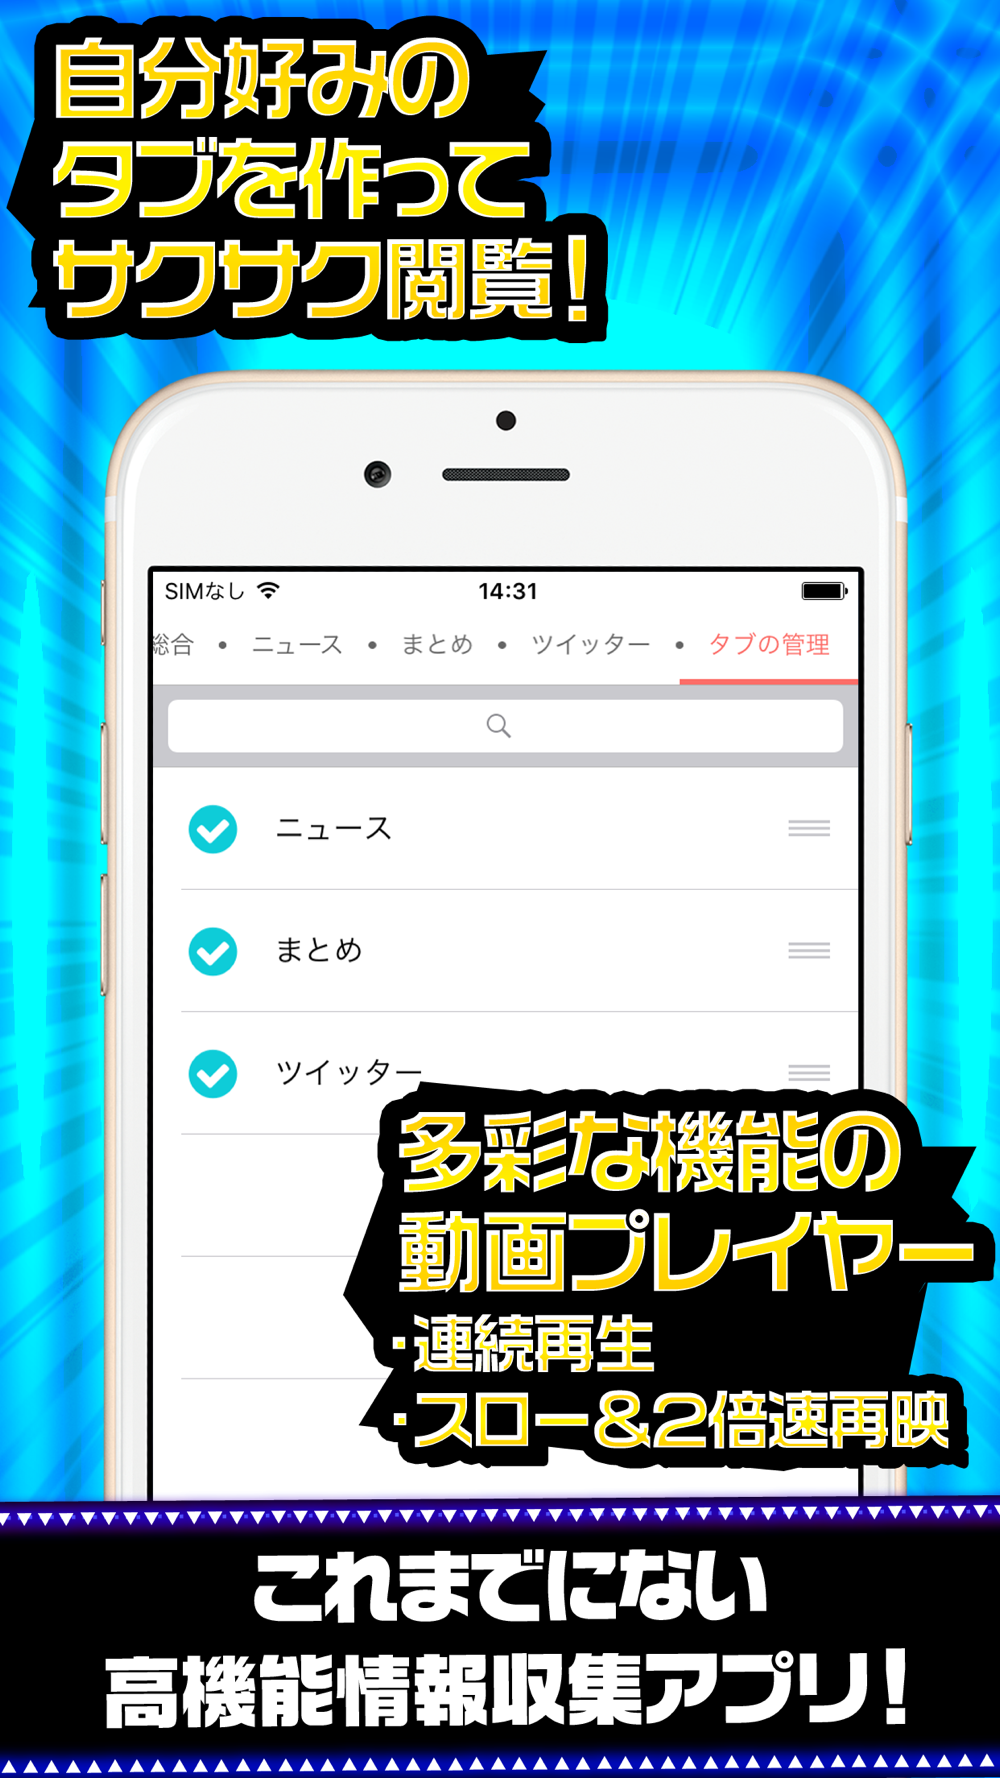 しま松完全攻略 For おそ松さん よくばり ニートアイランド Free Download App For Iphone Steprimo Com